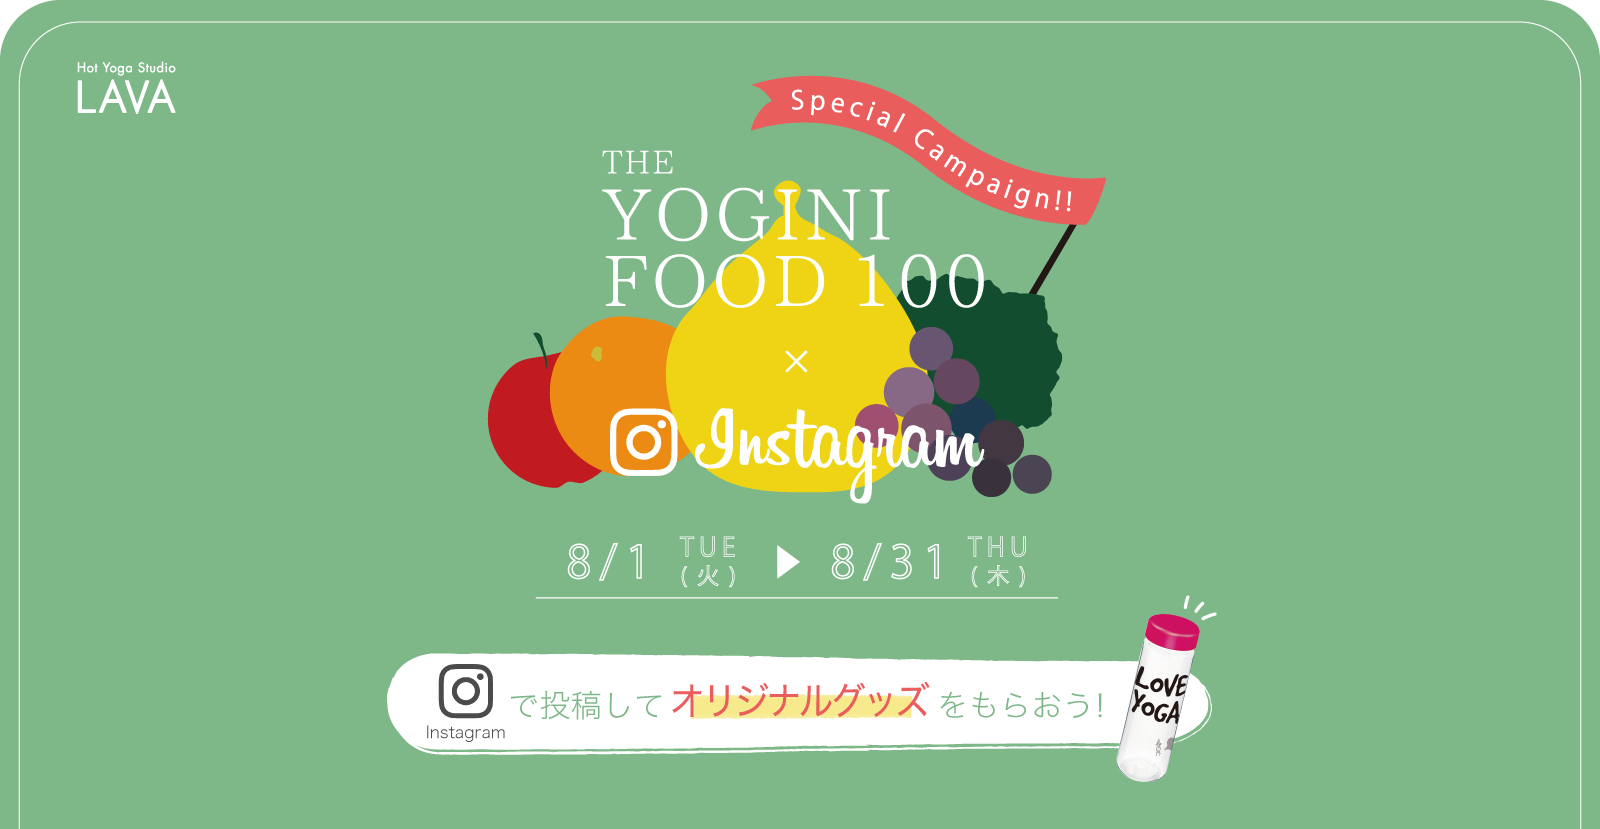 MY YOGINI FOOD 100×Instagramキャンペーン Instagramで投稿してオリジナルグッズを貰おう！